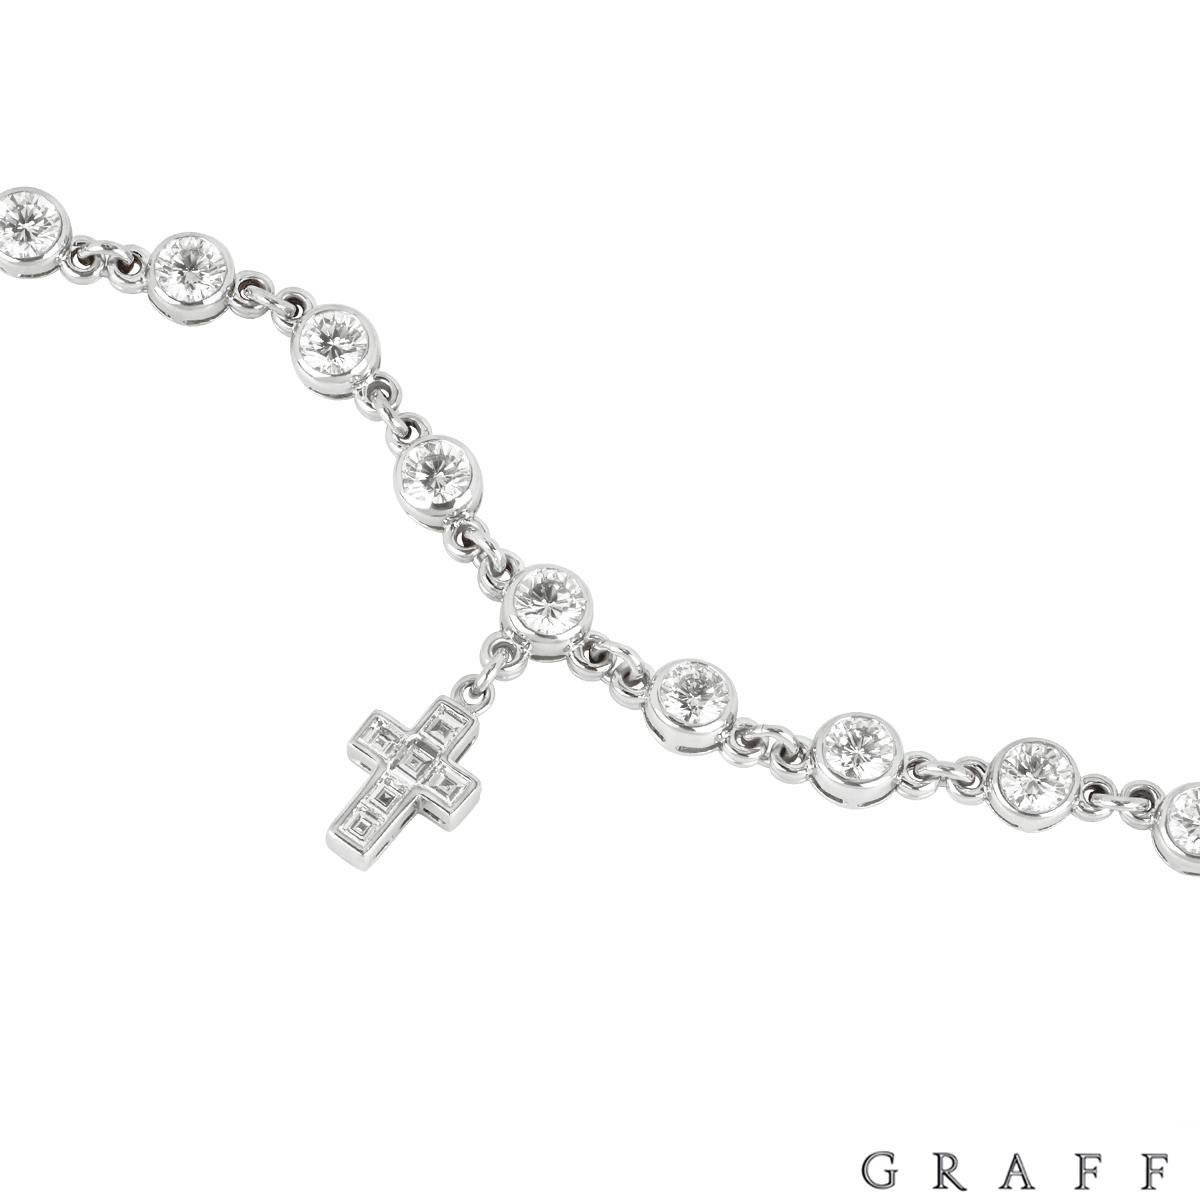 graff men's bracelet